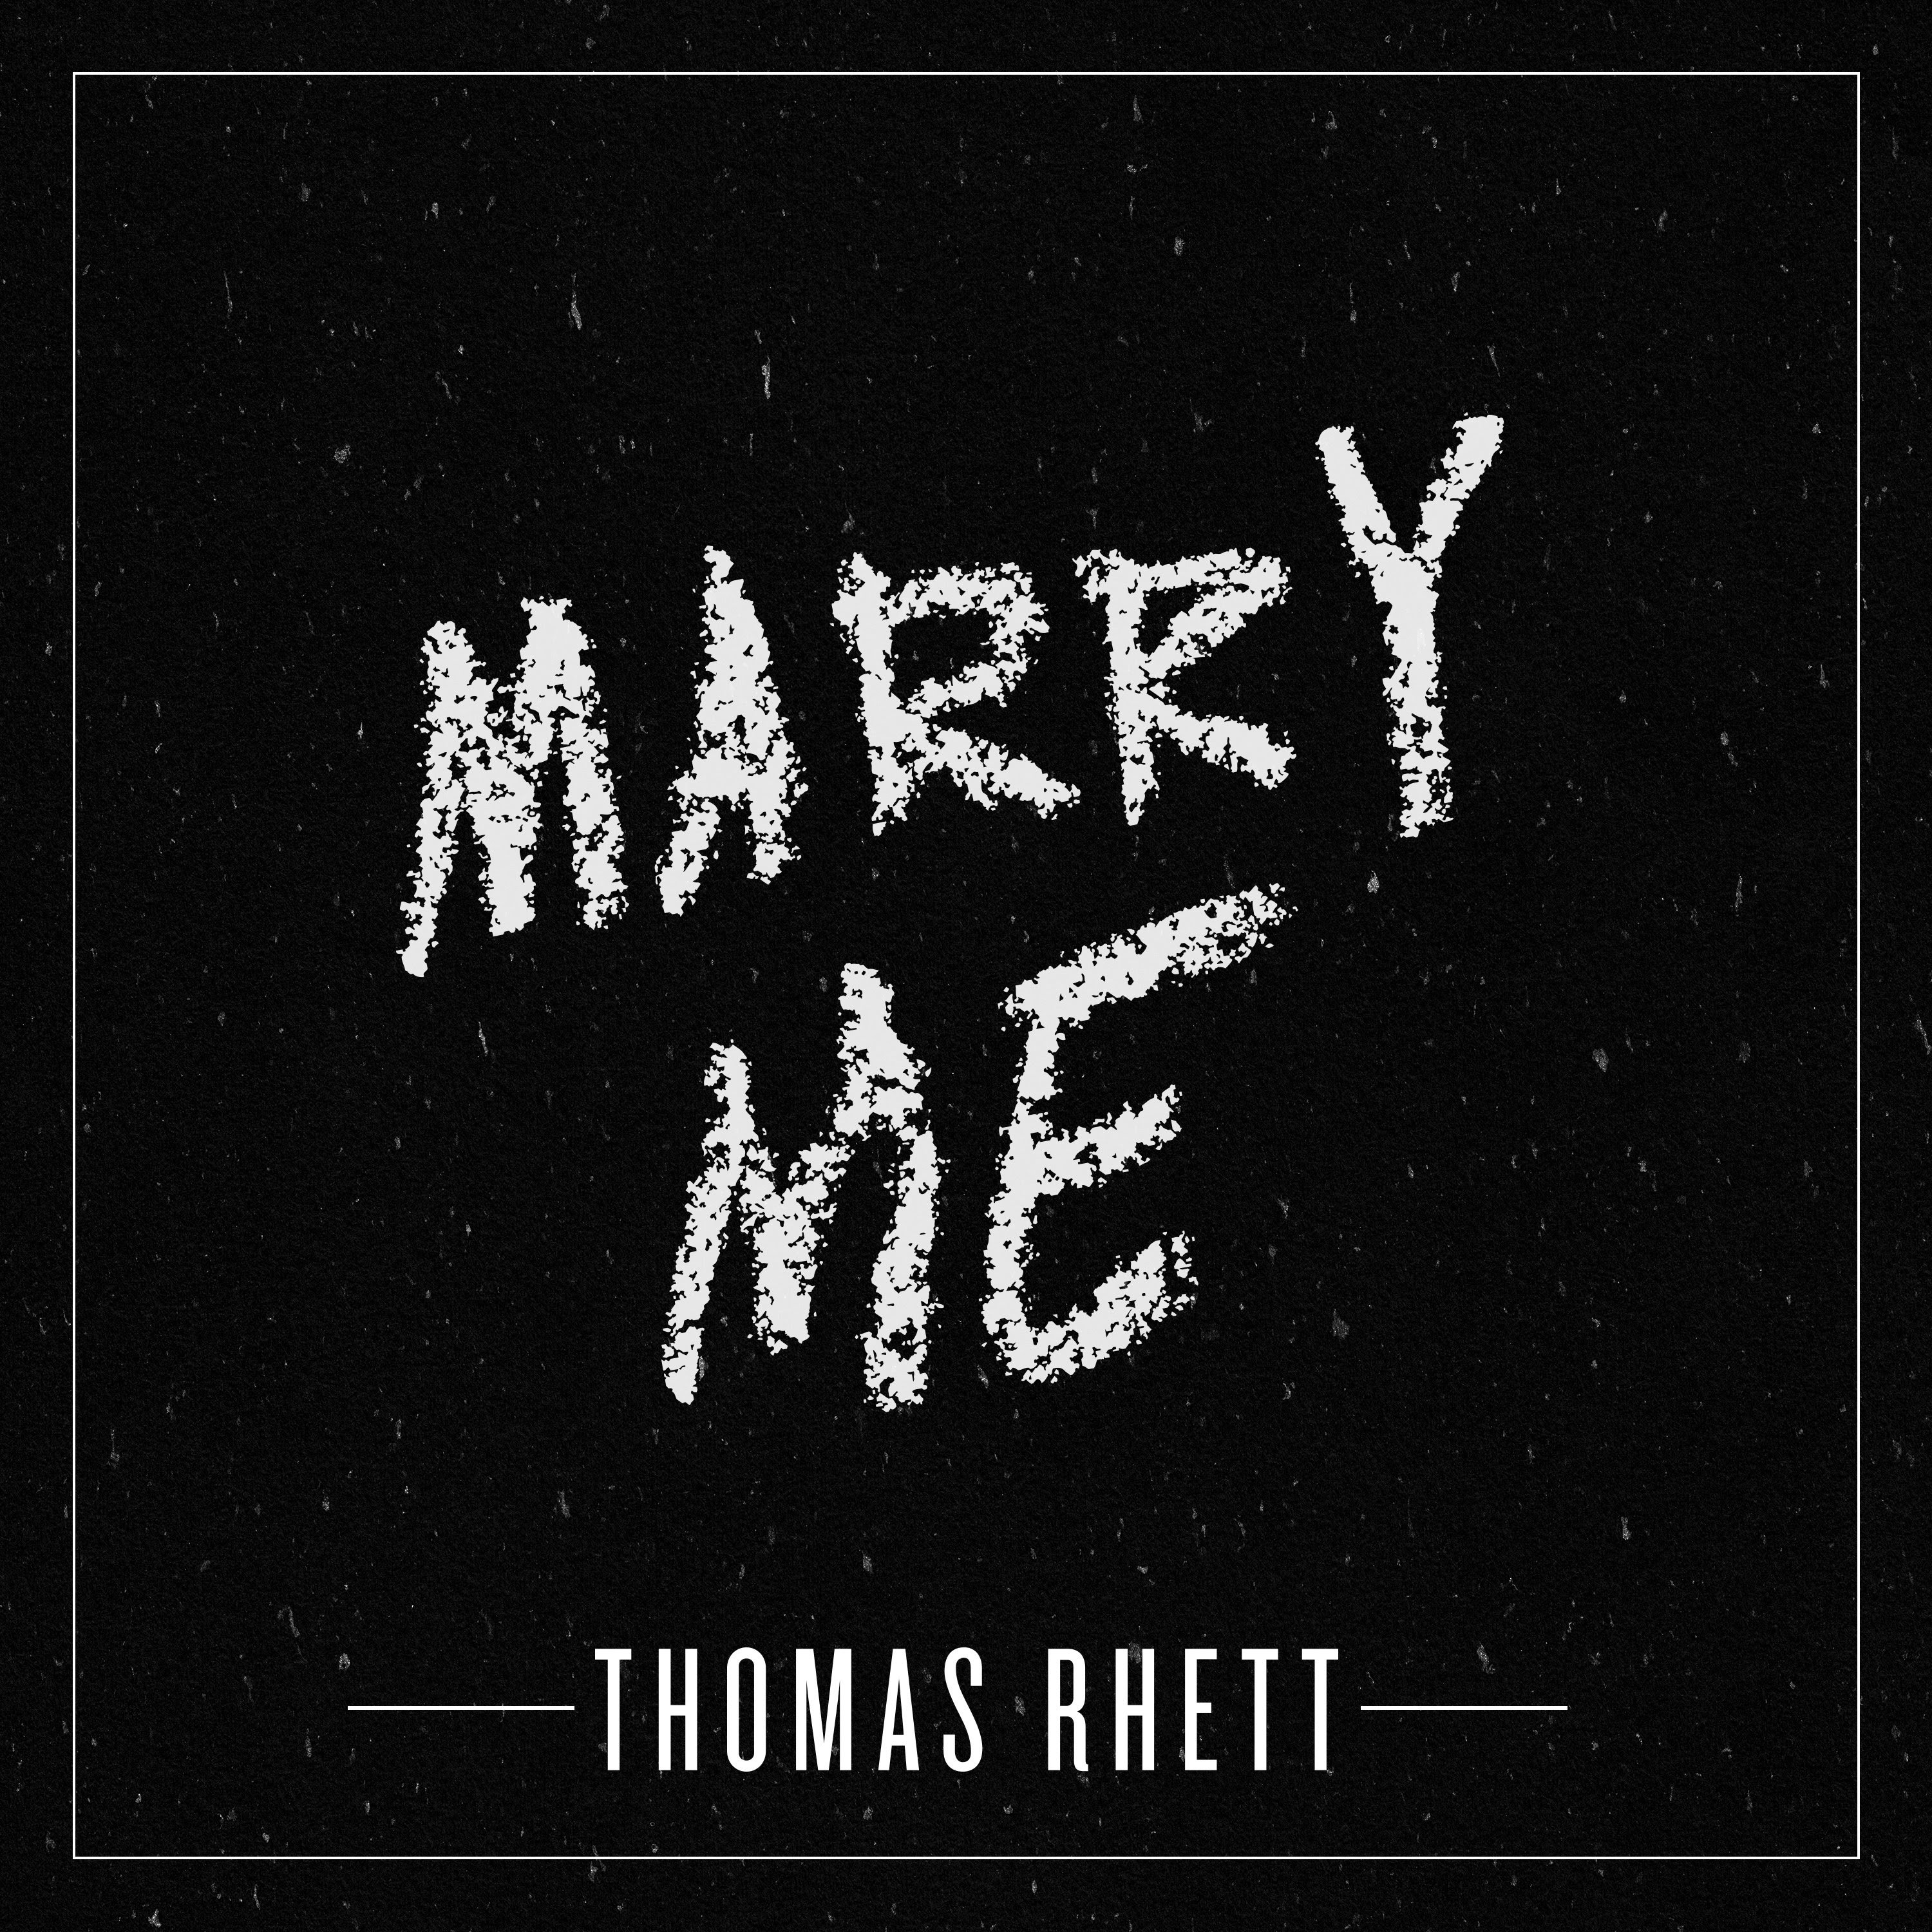 Thomas Rhett’s “Marry Me” is His Tenth No. 1 Hit